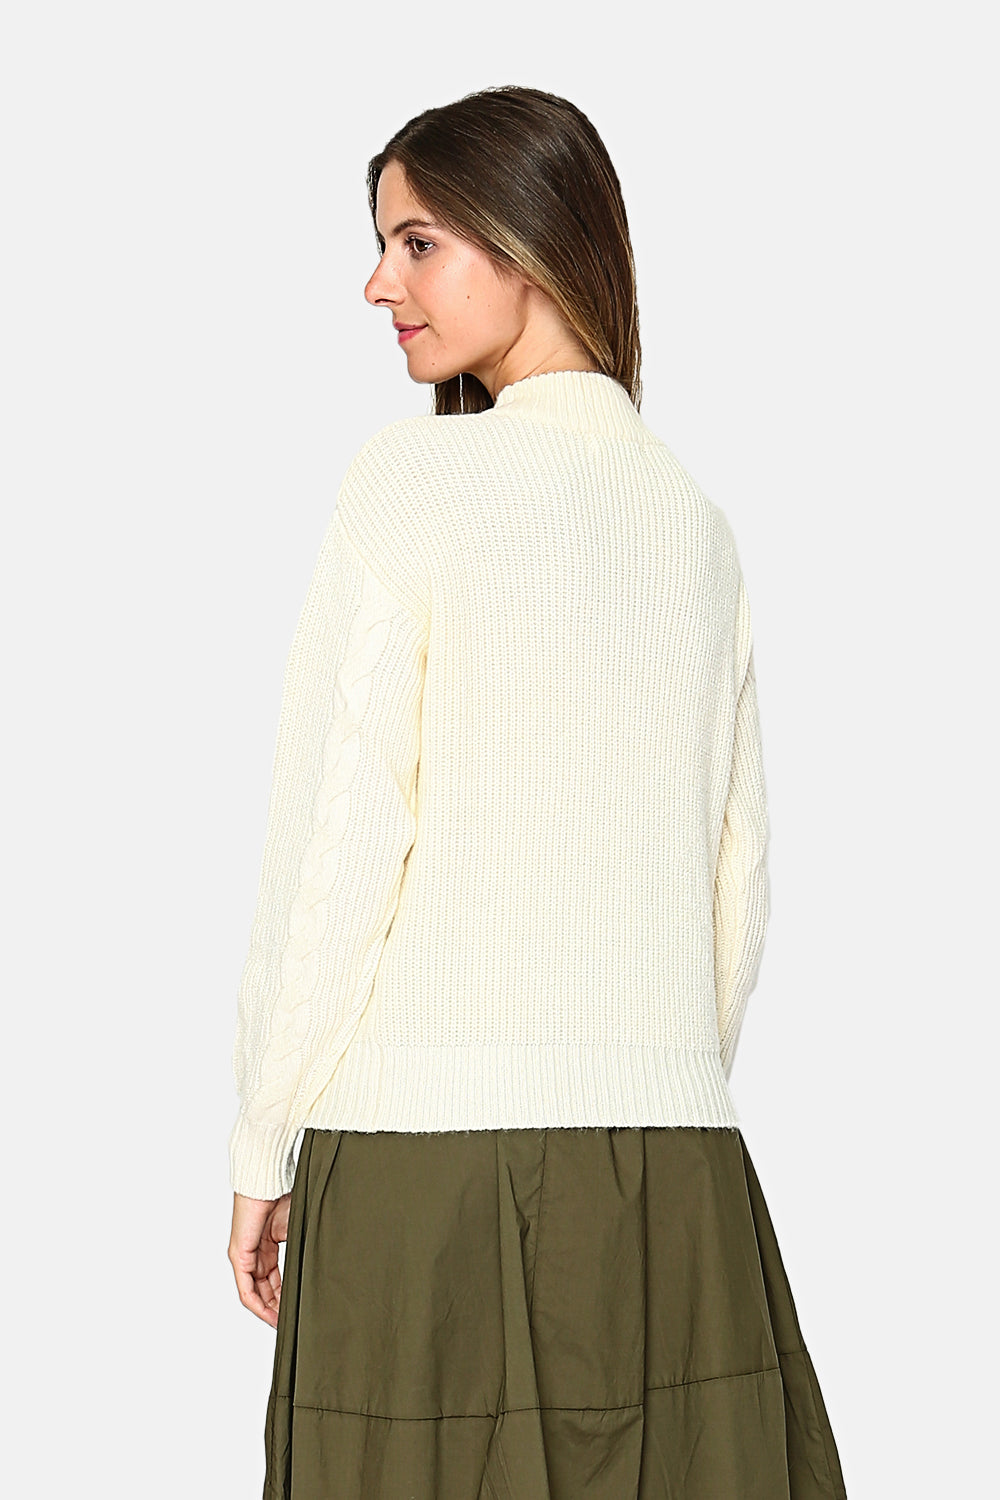 Fancy knit high-neck sweater